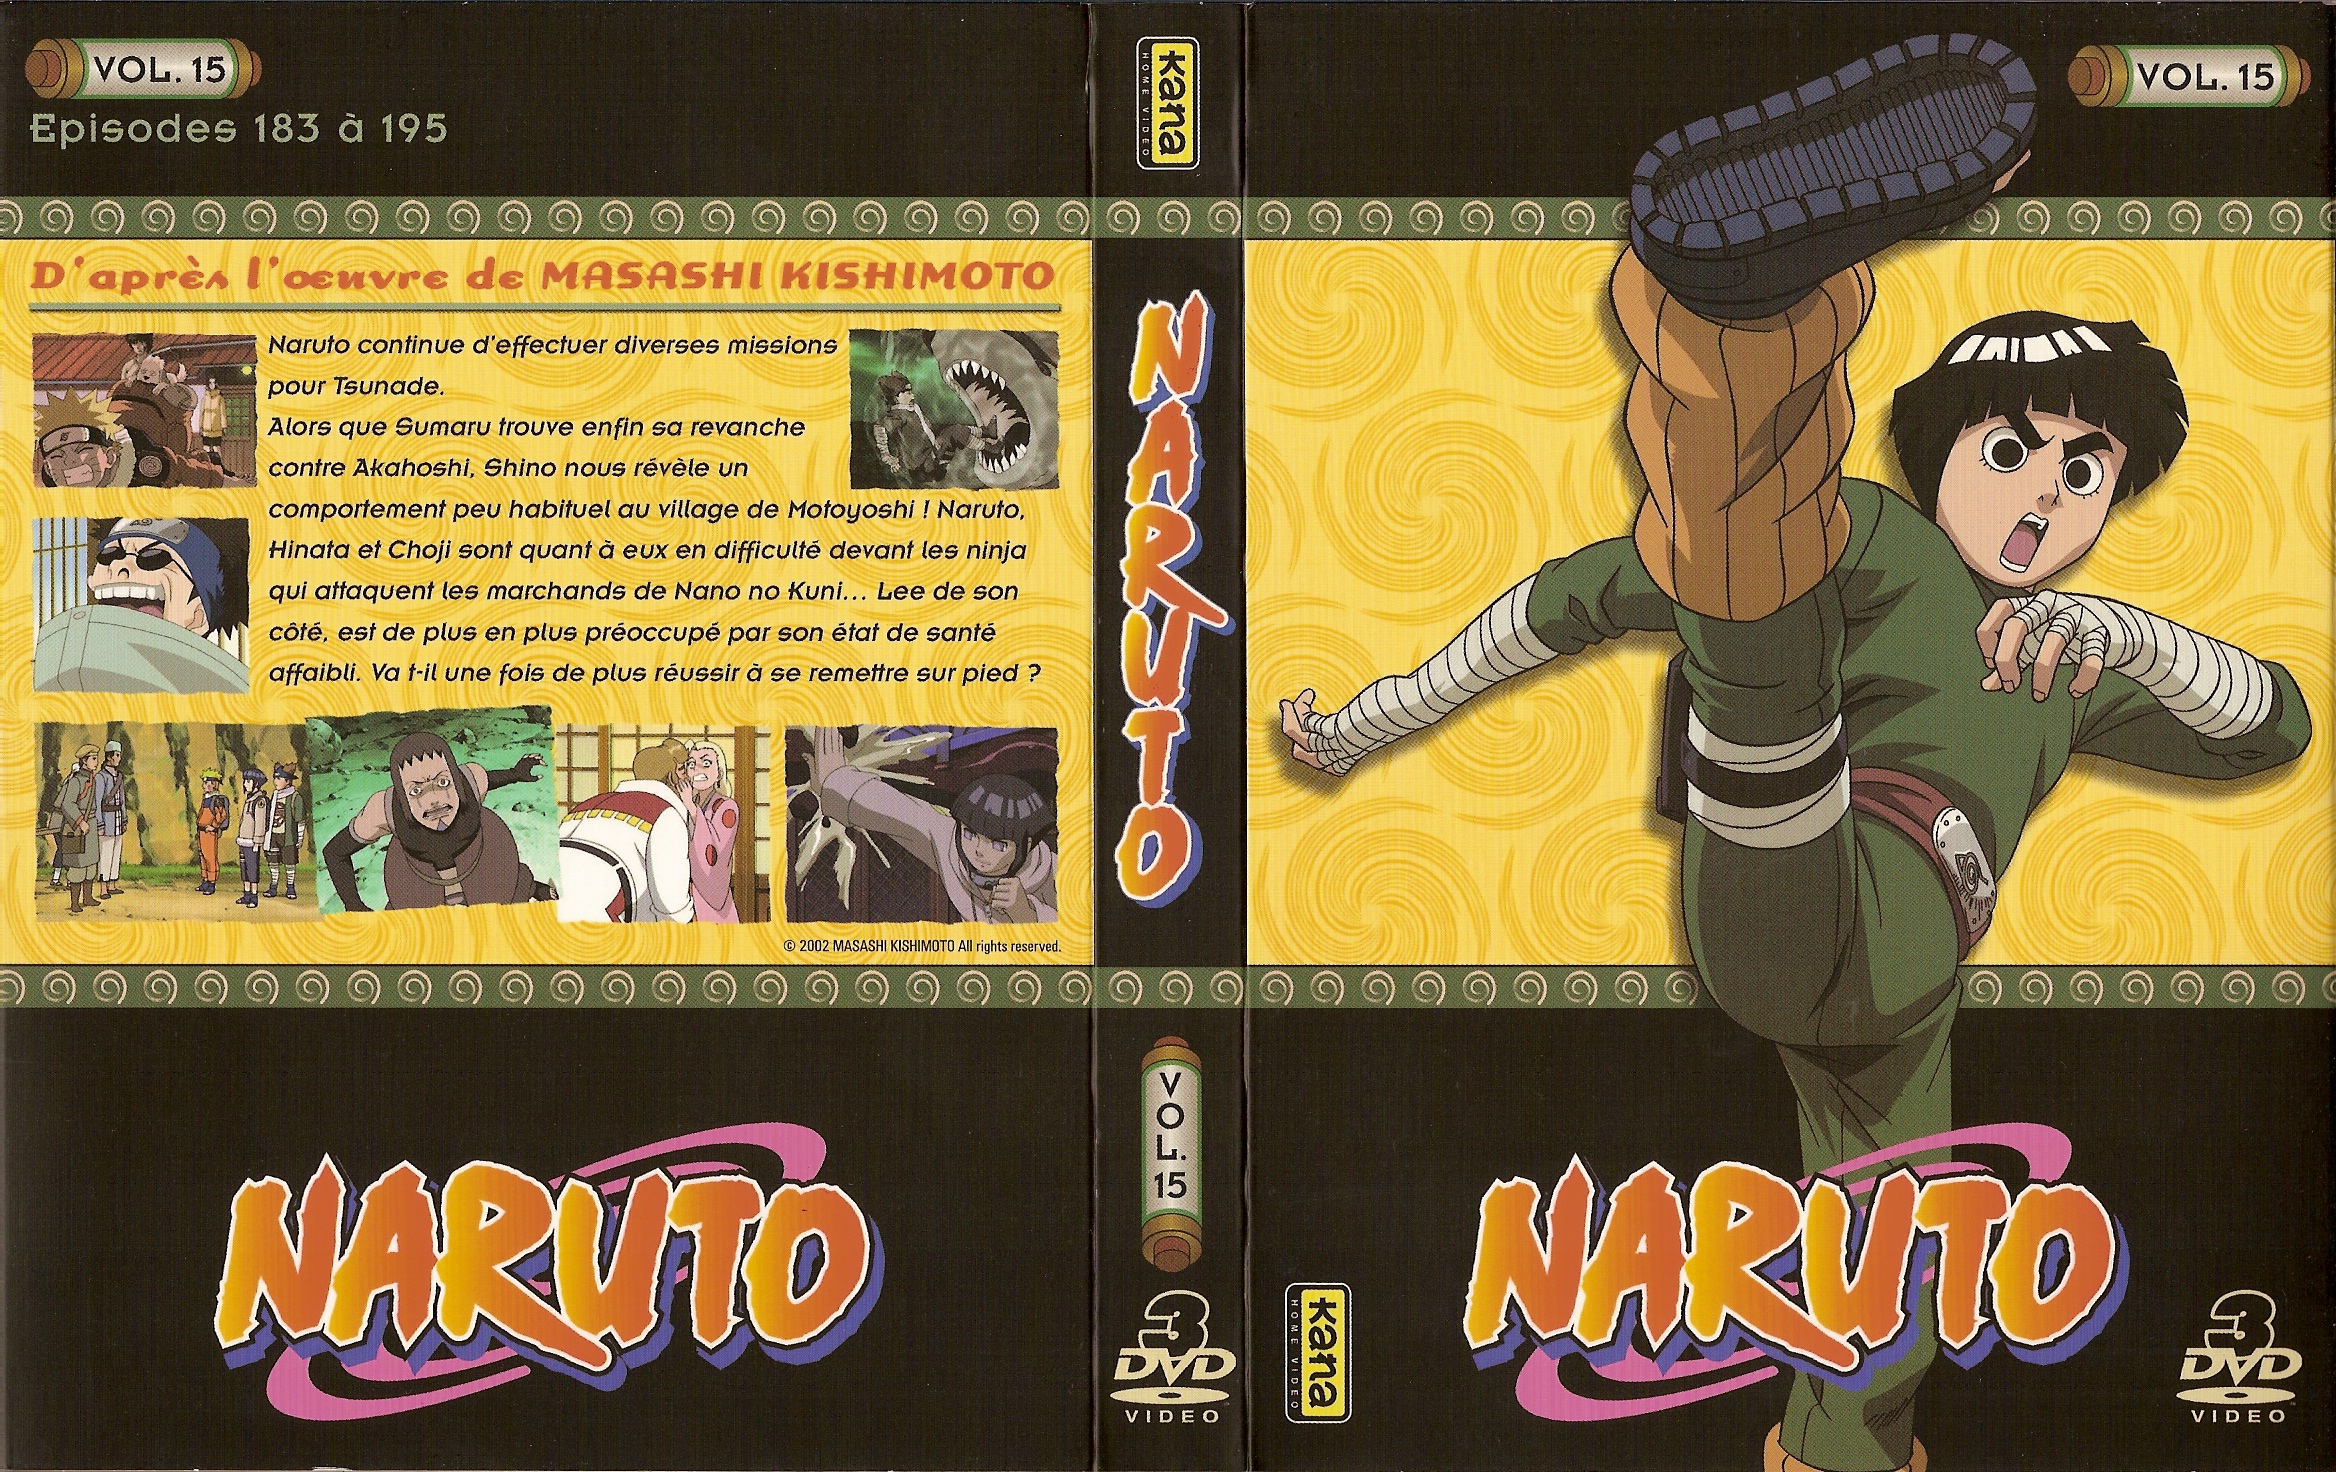 Jaquette DVD Naruto vol 15